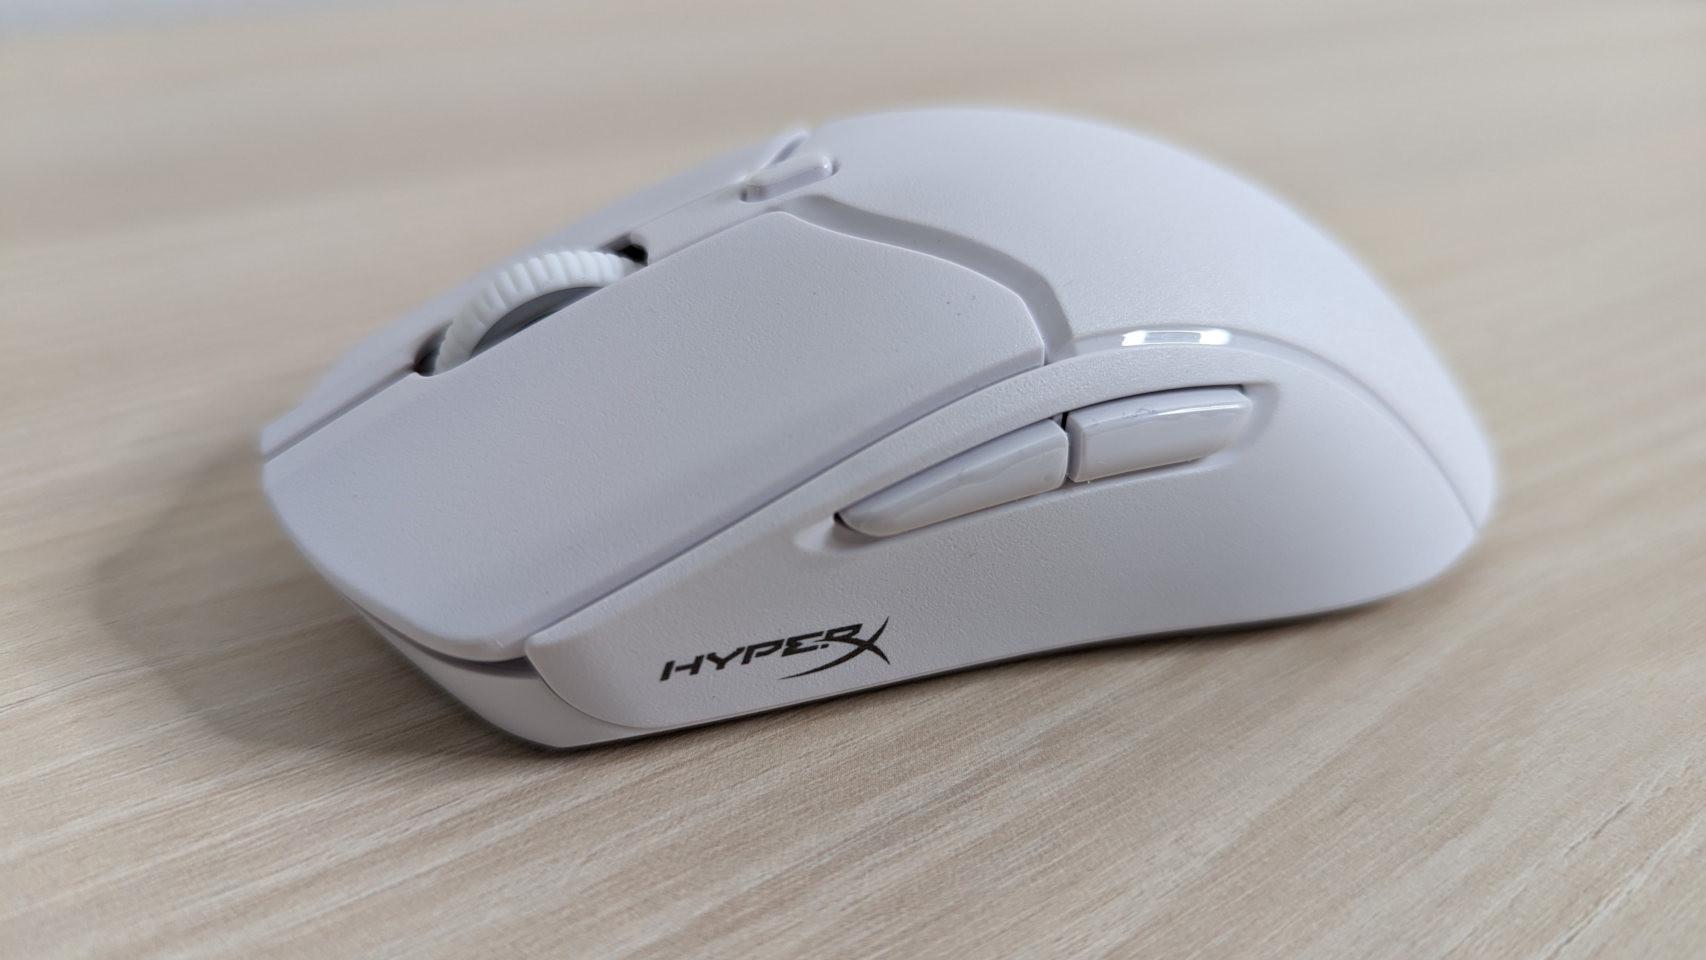 En blanco, el ratón de HyperX es muy elegante